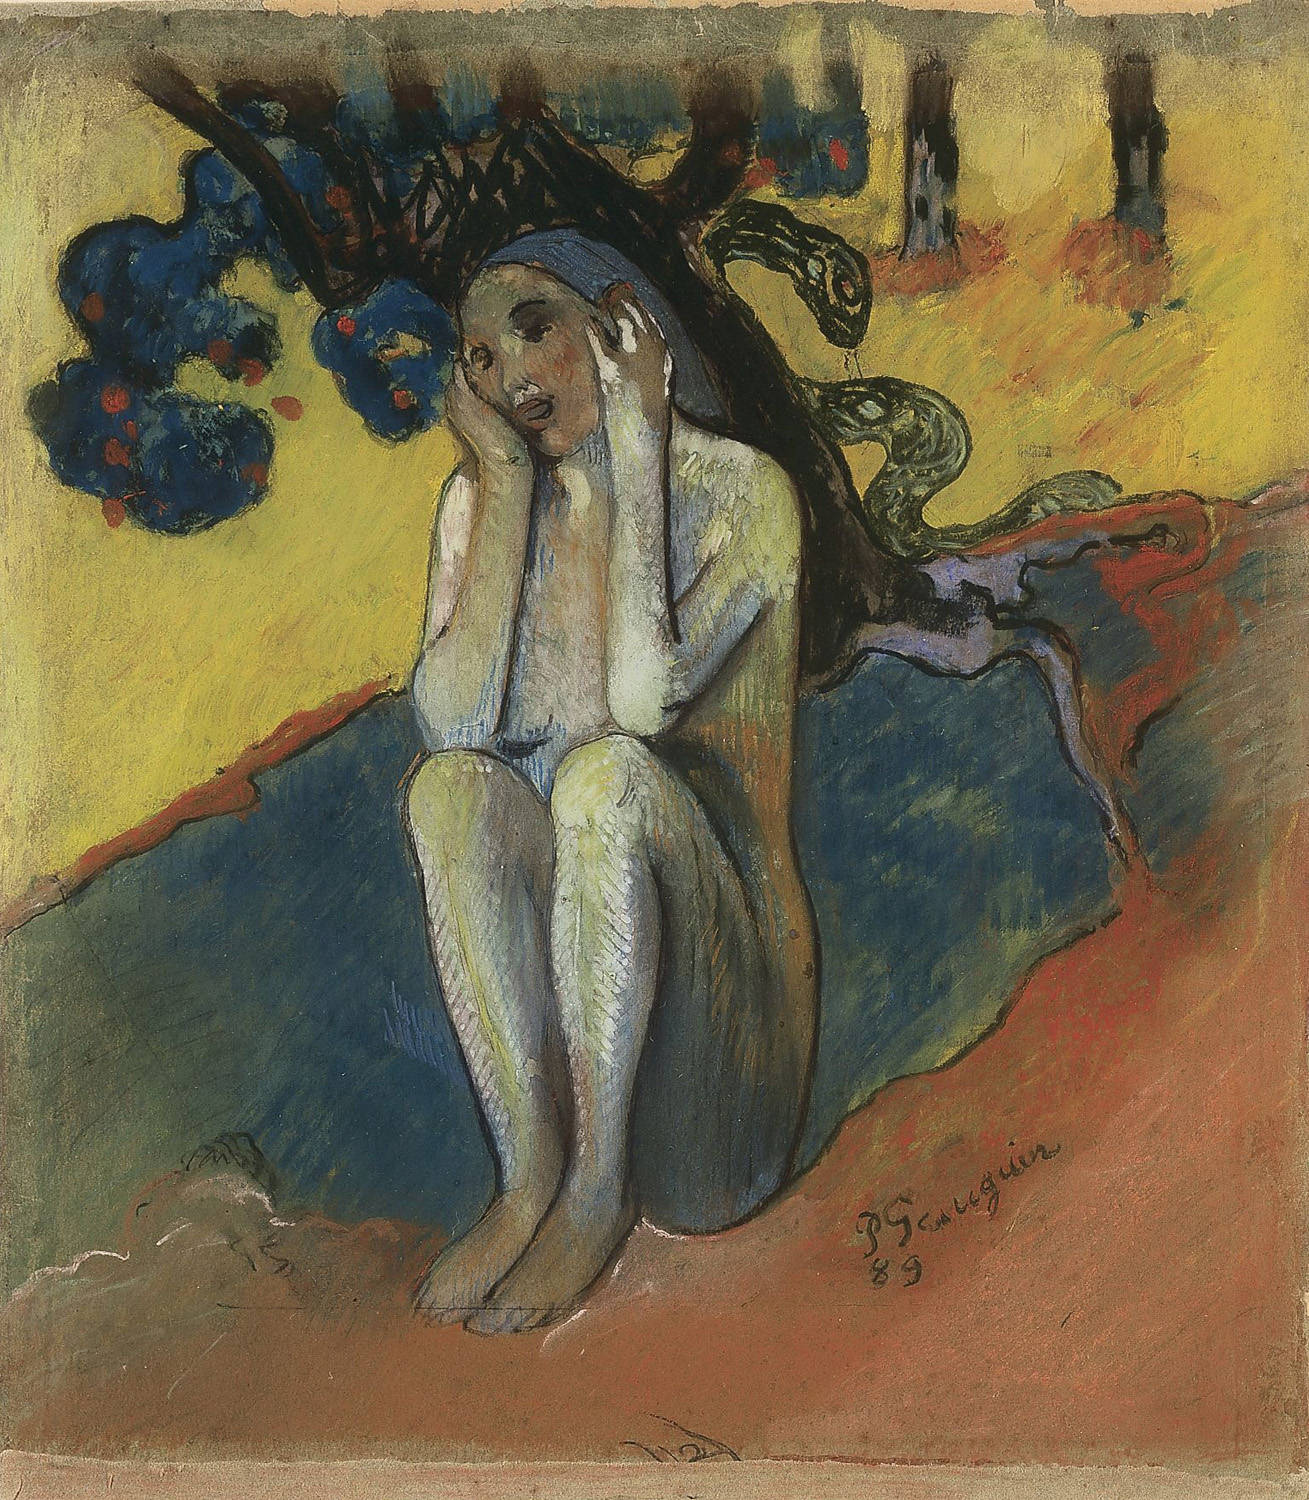 Paul+Gauguin-1848-1903 (307).jpg